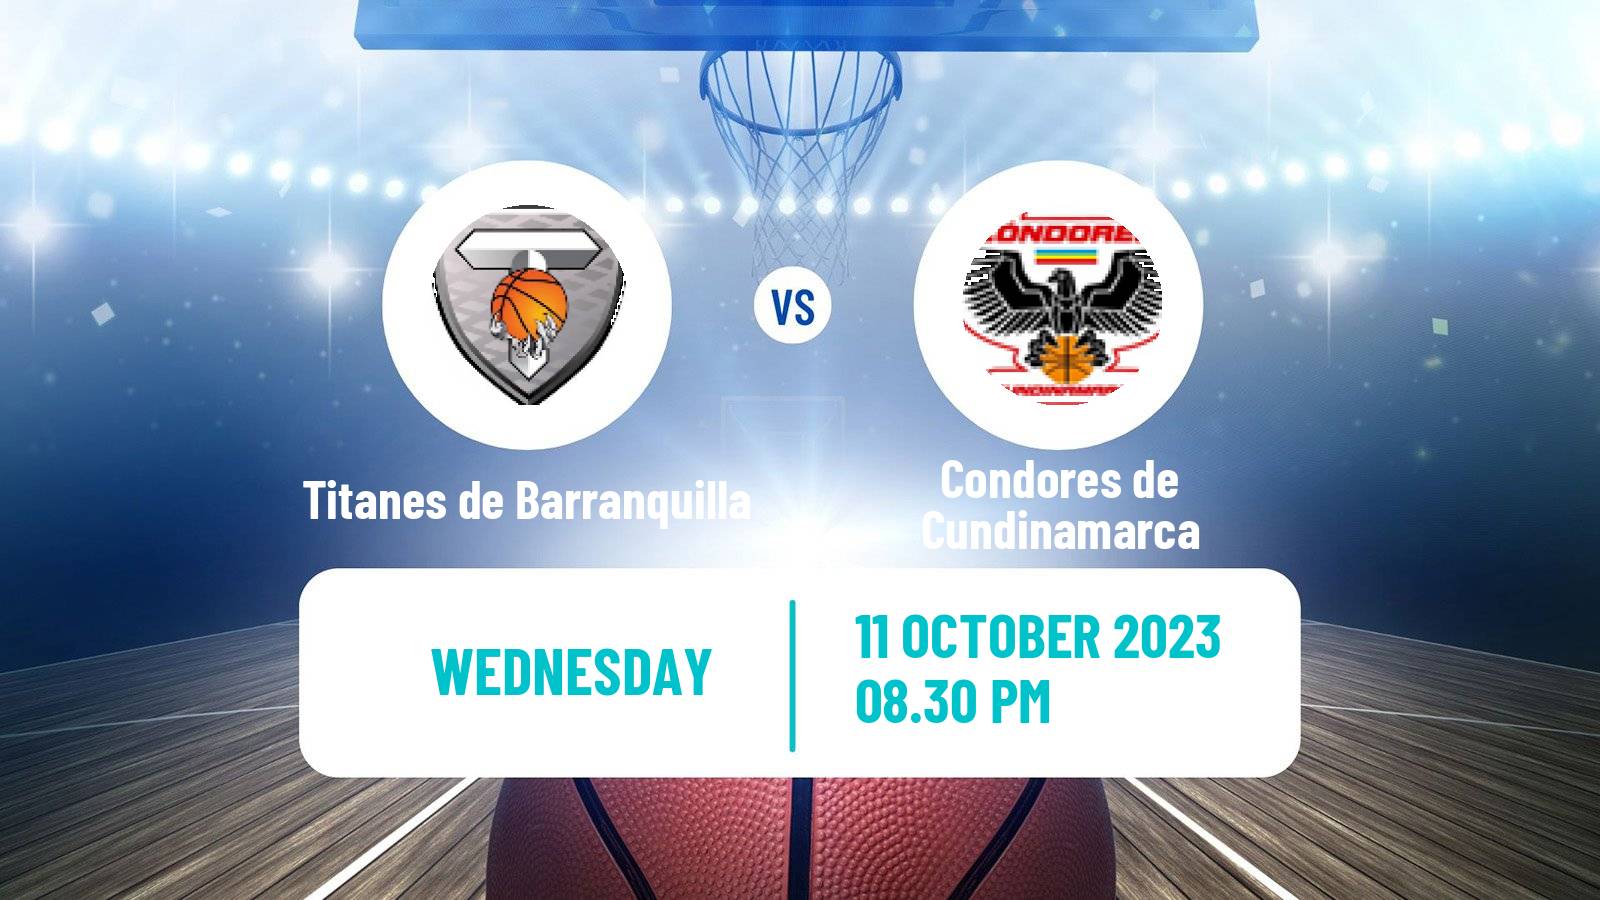 Basketball Colombian LBP Basketball Titanes de Barranquilla - Condores de Cundinamarca